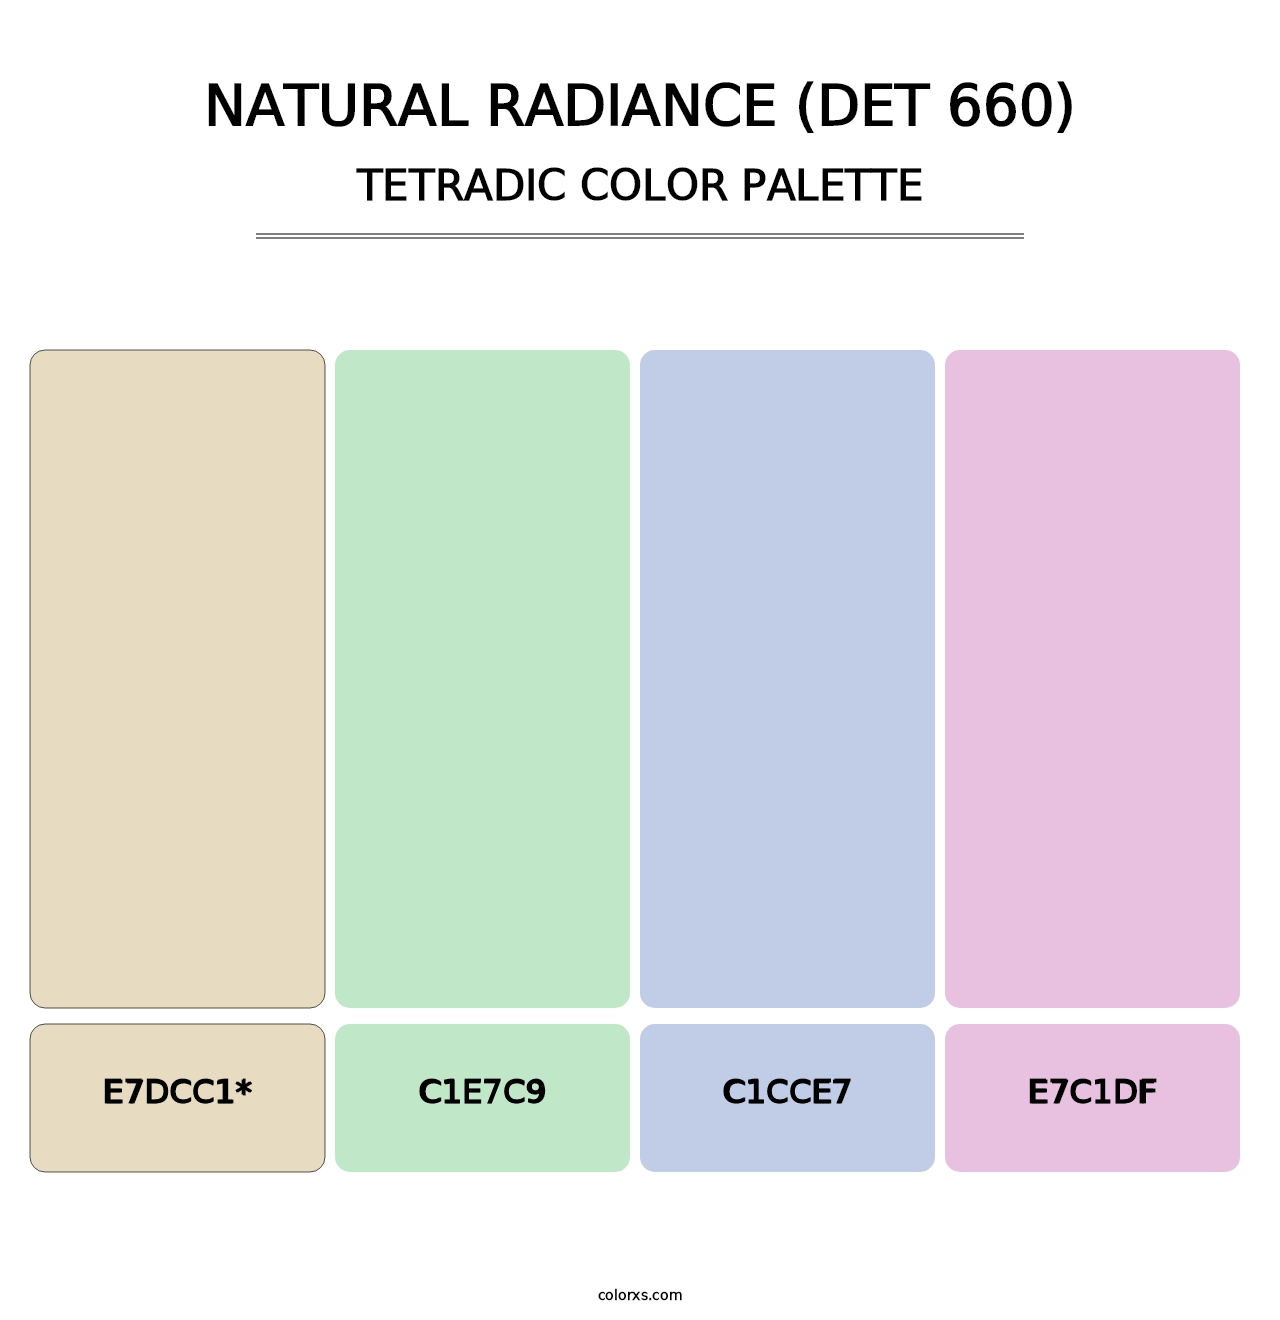 Natural Radiance (DET 660) - Tetradic Color Palette